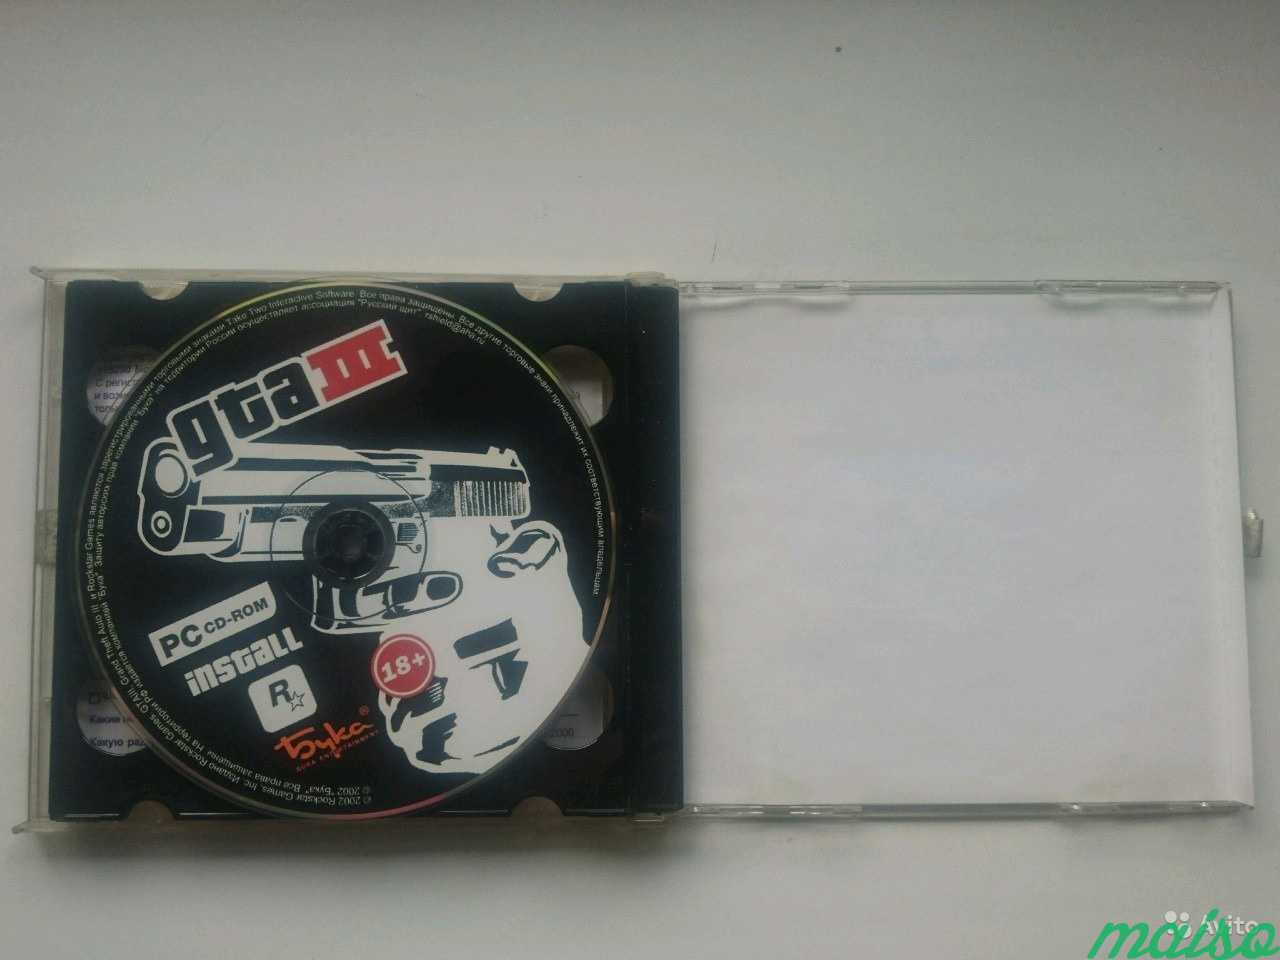 Лицензионный диск GTA III для PC издательство Бука в Санкт-Петербурге. Фото 3